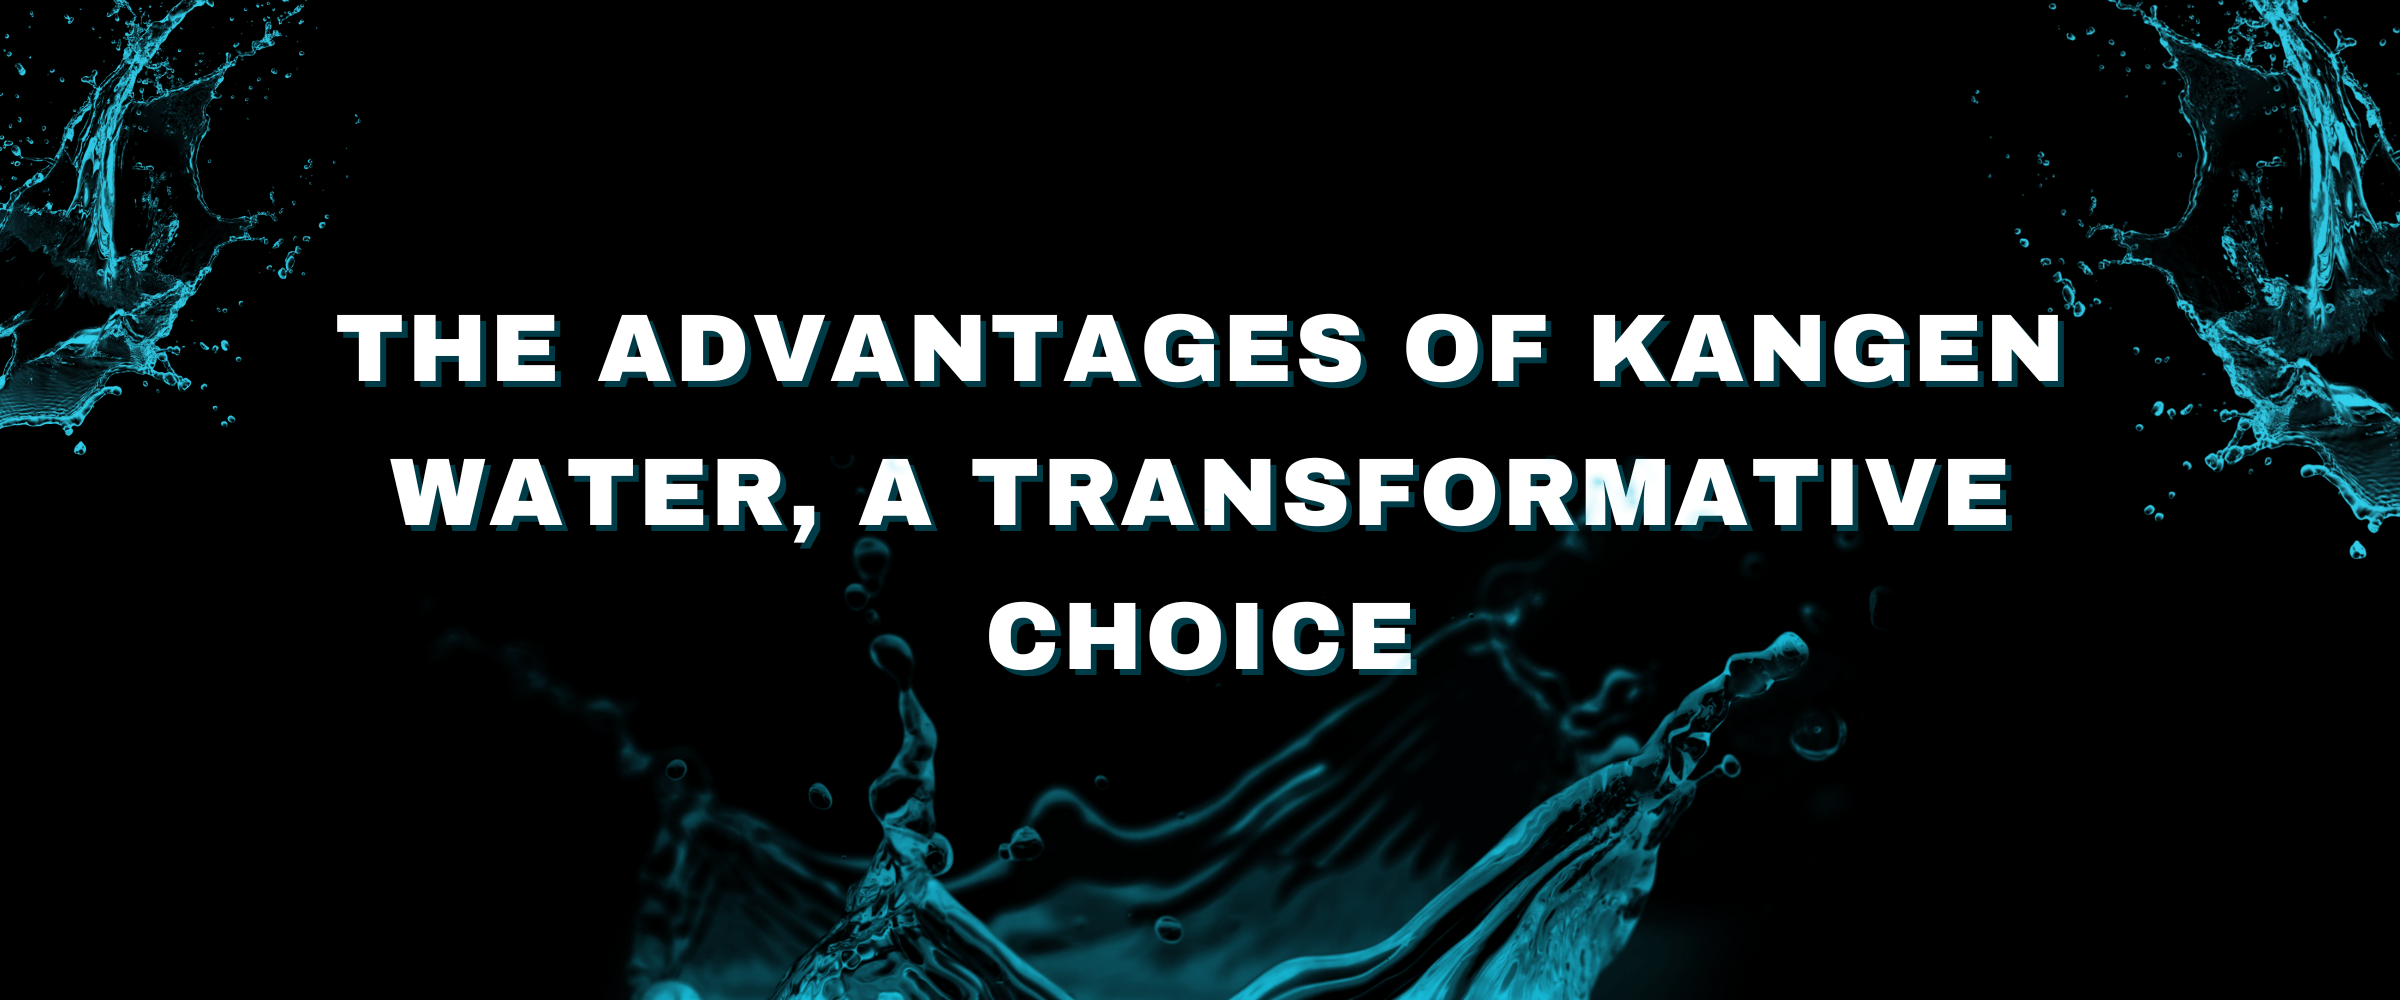 Advantages of Kangen Water